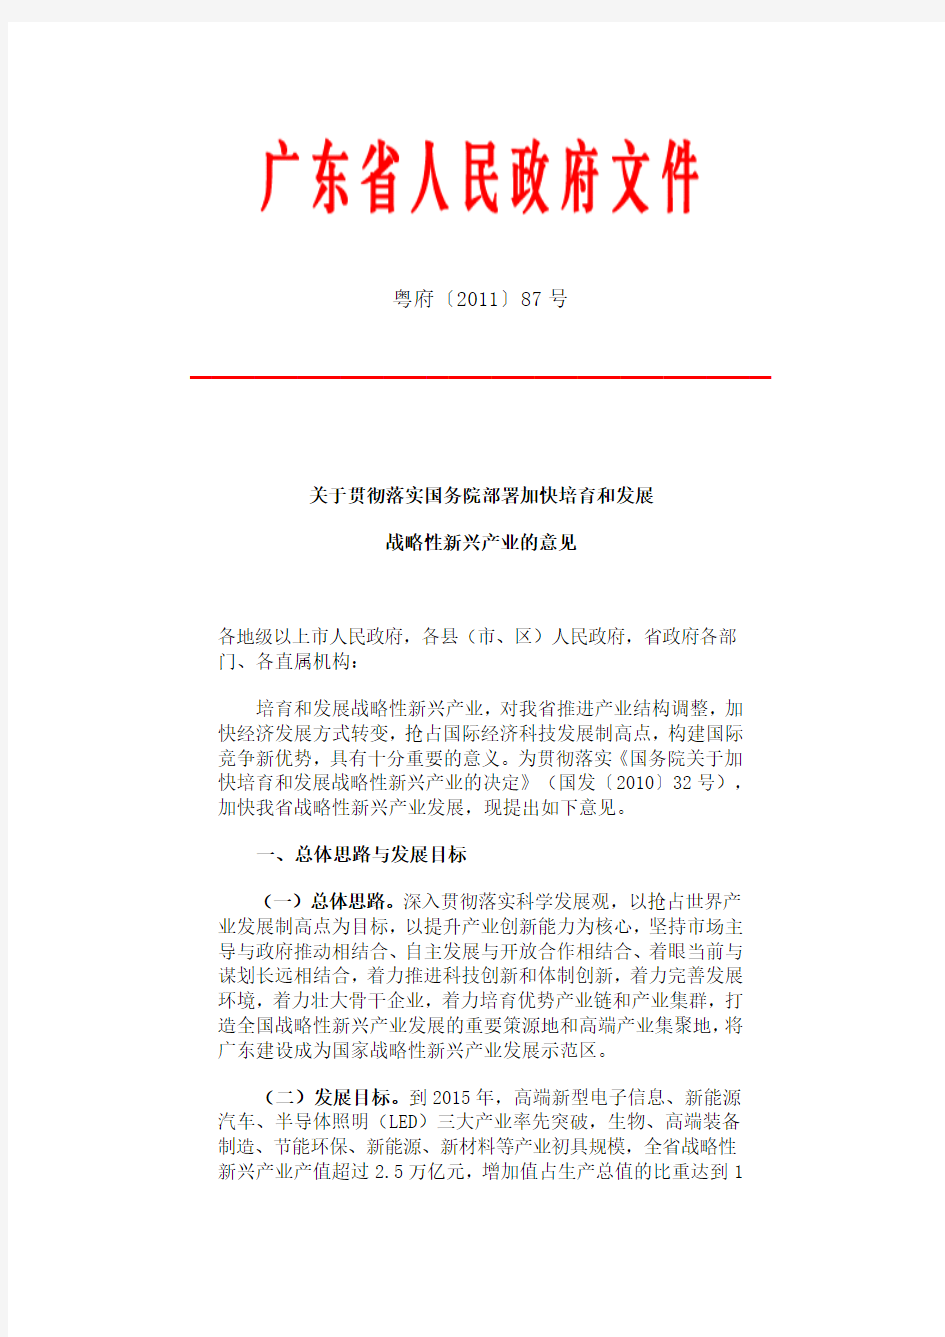 广东省《关于贯彻落实国务院部署加快培育和发展战略性新兴产业的意见》2